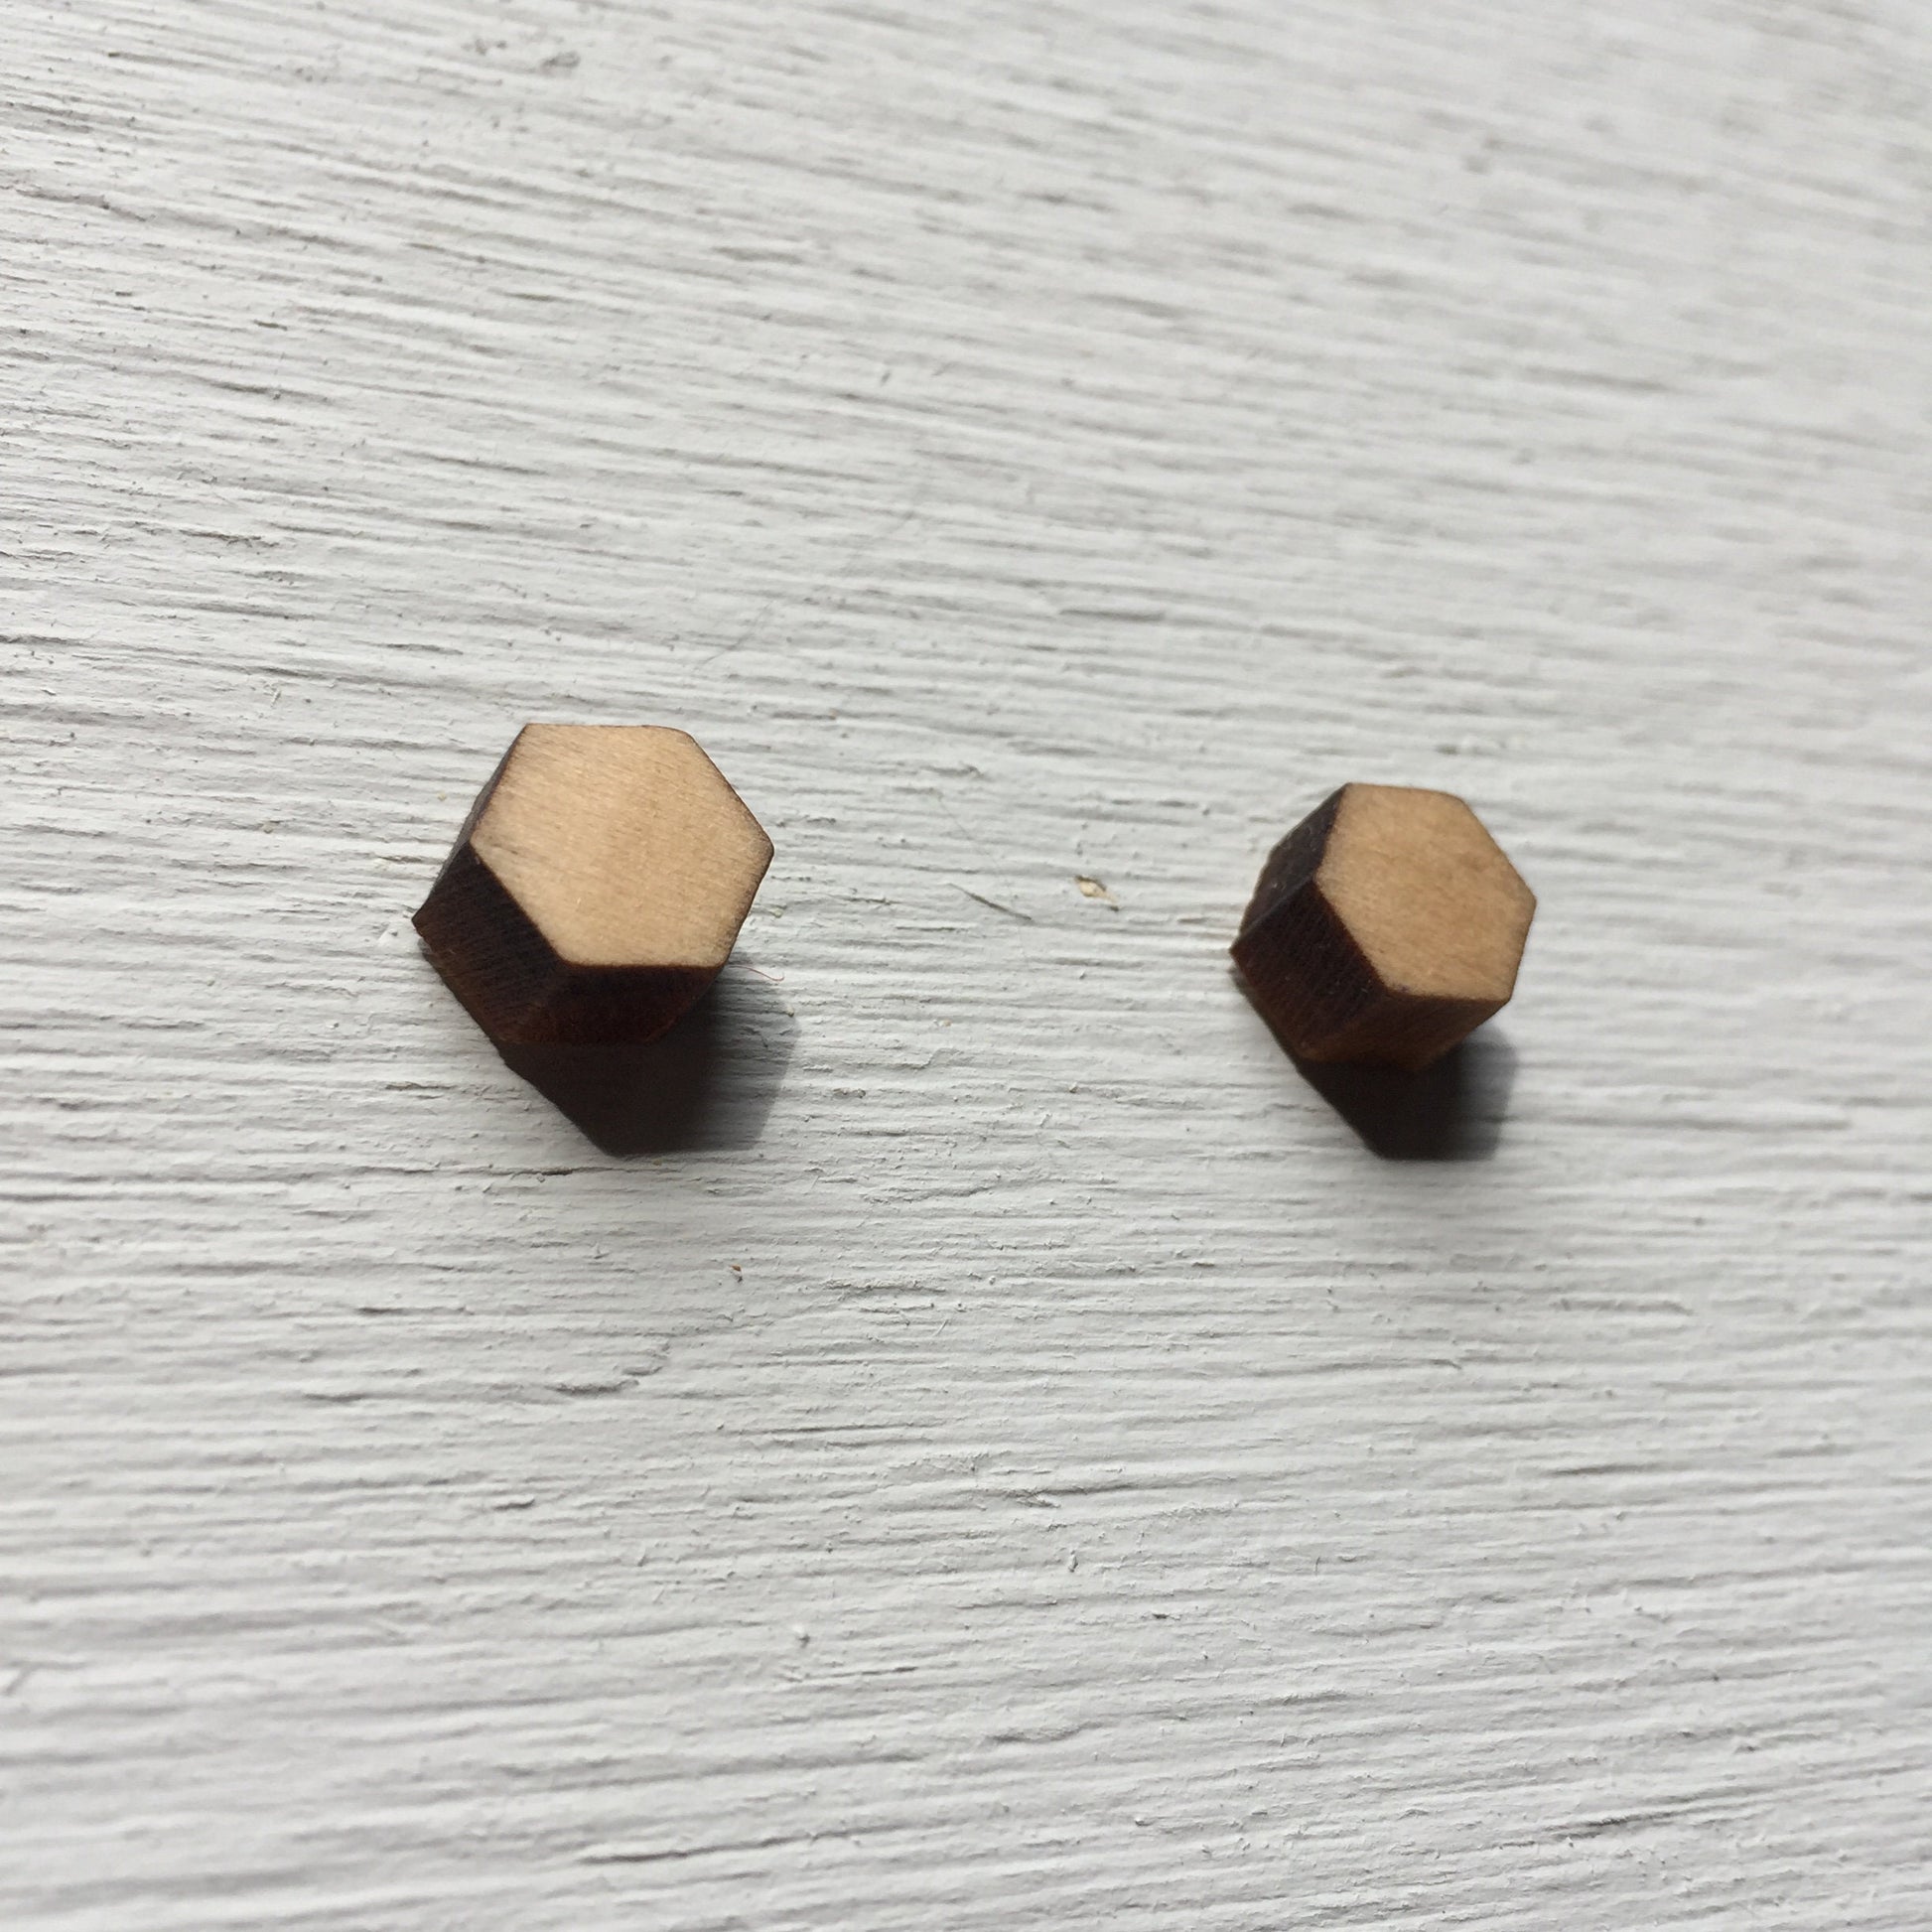 Hexagon Earrings - Remnant Series - Wooden Laser Cut Earrings || Modern Geometric Jewelry